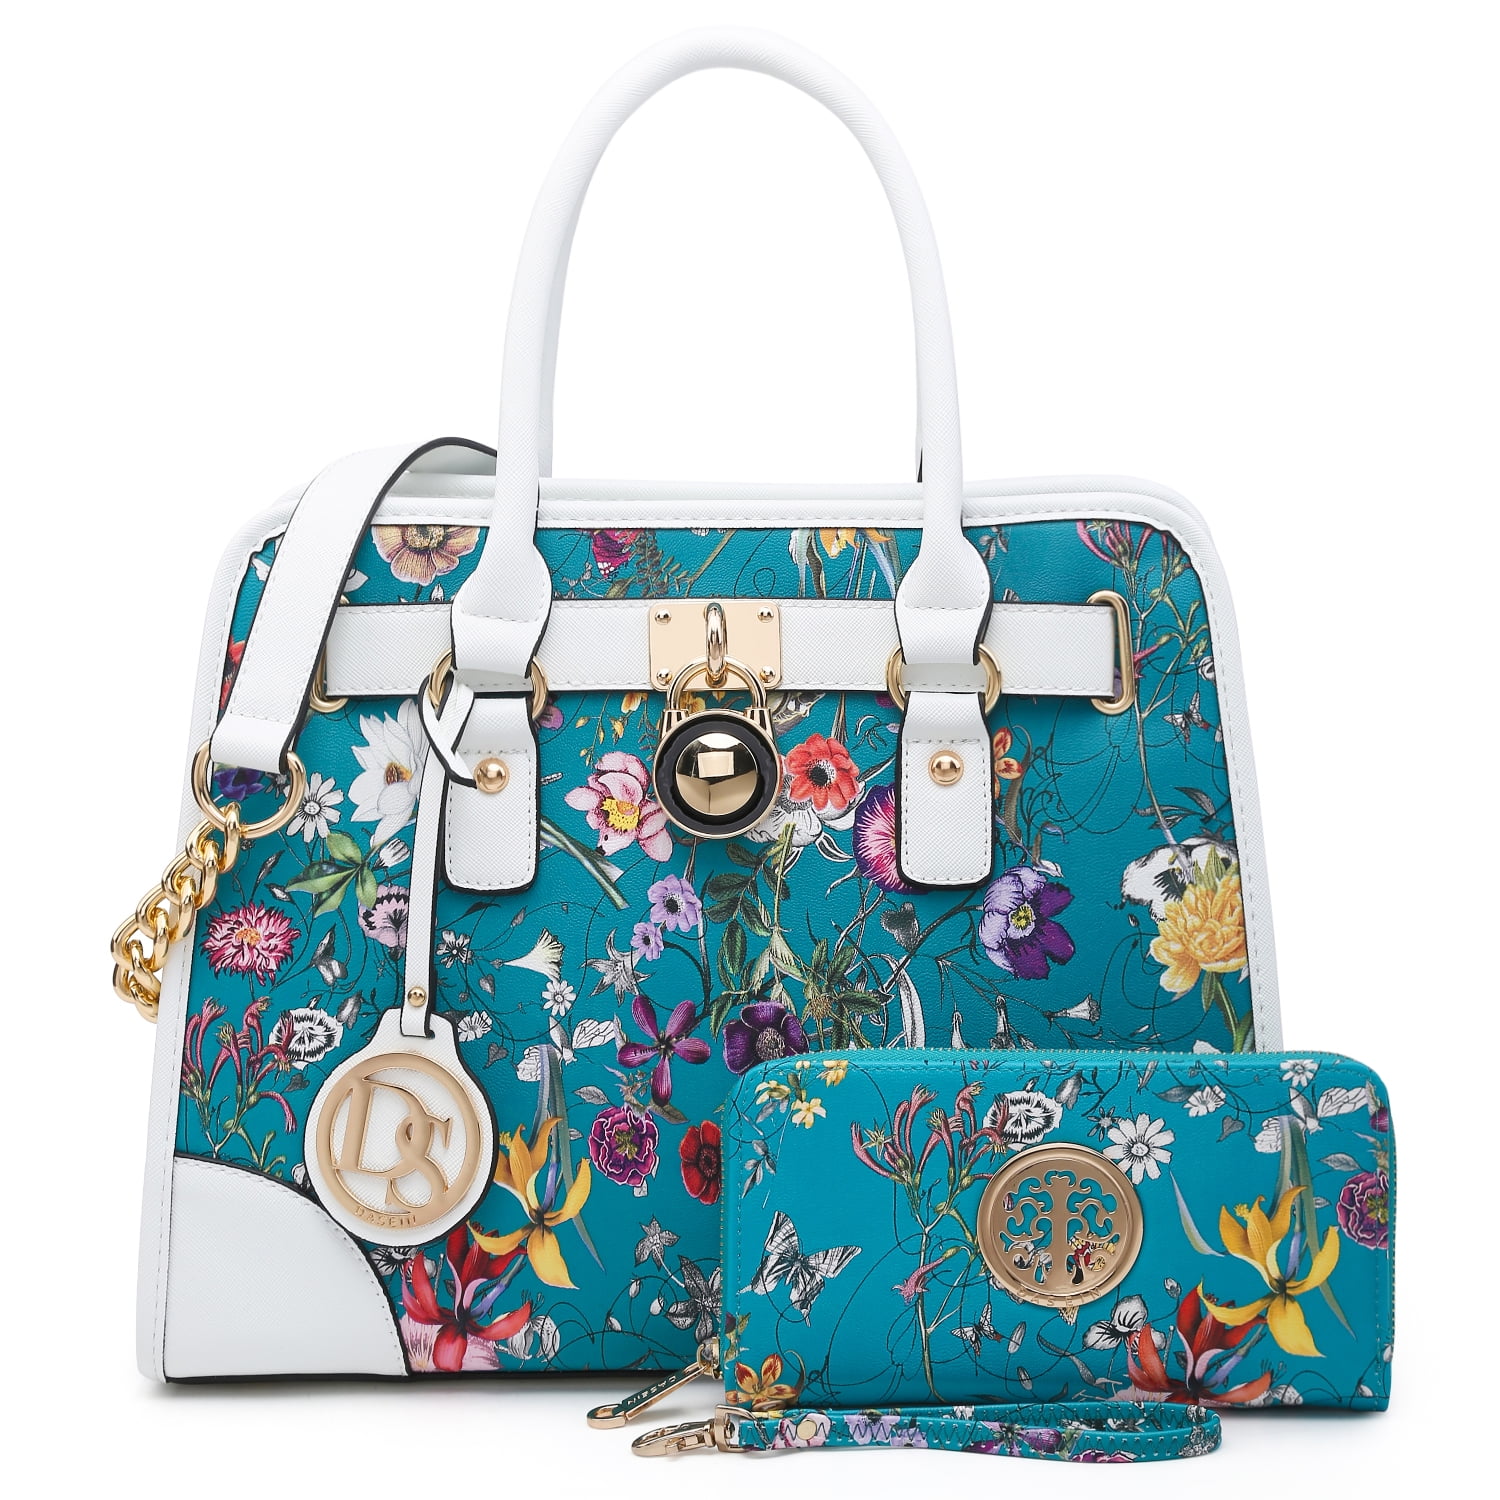 DASEIN Women Handbags Top Handle Satchel Purse Shoulder Bag Briefcase ...